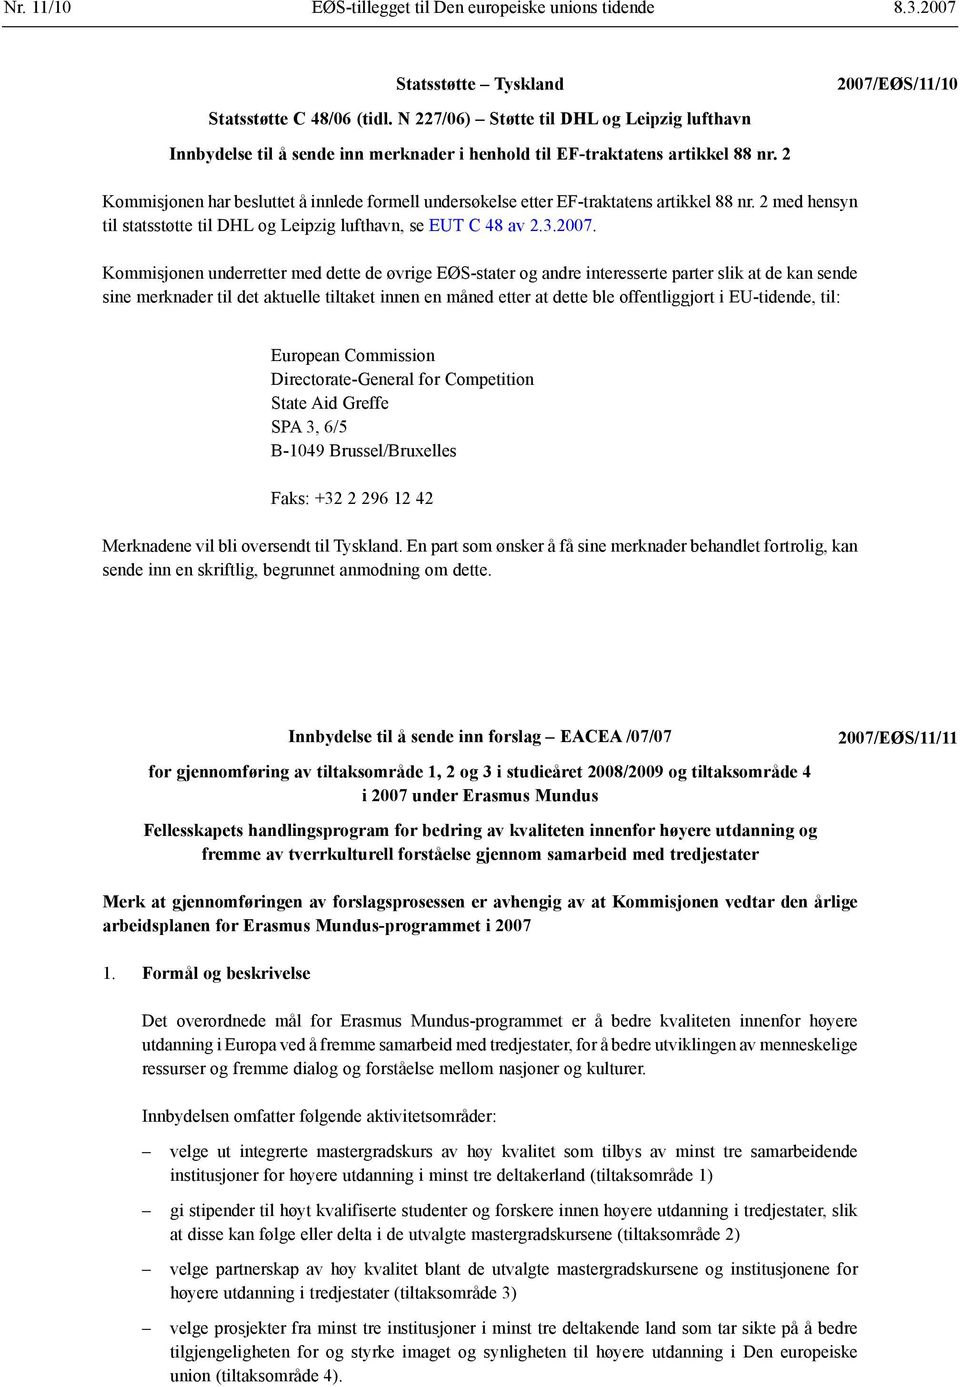 2 Kommisjonen har besluttet å innlede formell undersøkelse etter EF-traktatens artikkel 88 nr. 2 med hensyn til statsstøtte til DHL og Leipzig lufthavn, se EUT C 48 av 2.3.2007.